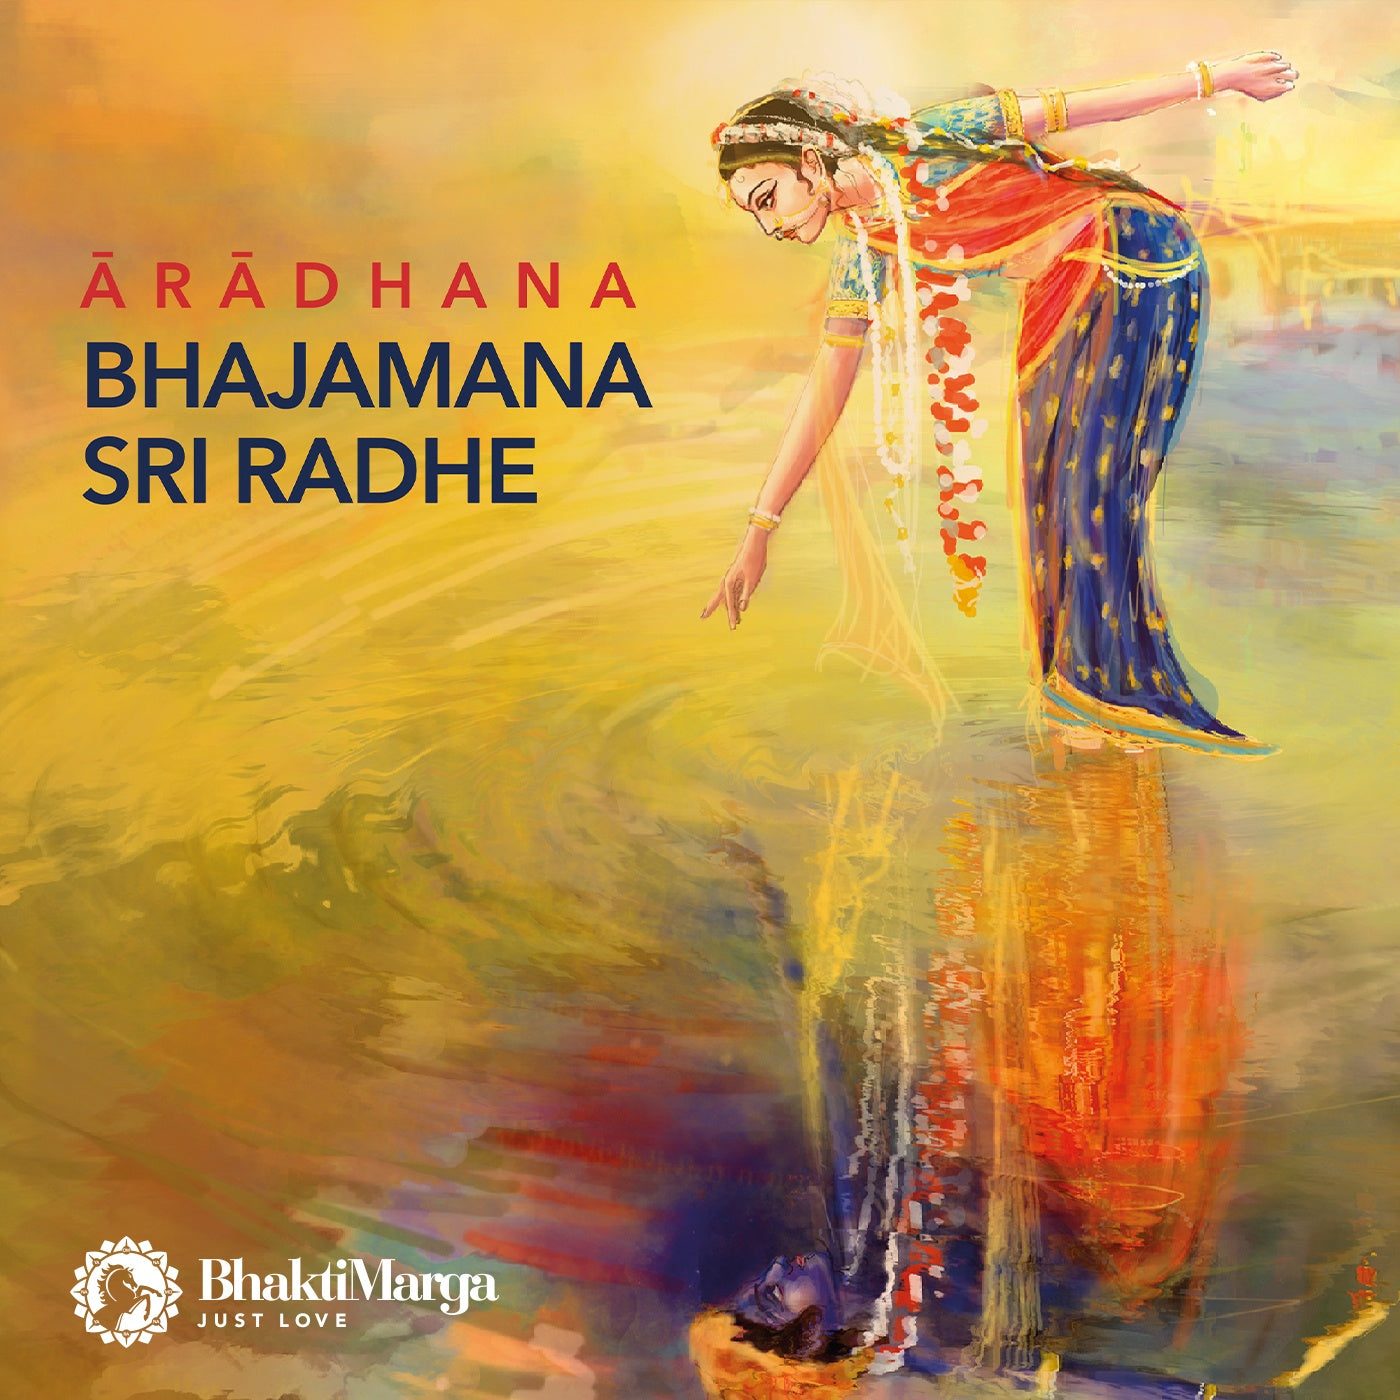 Aradhana: Bhajamana Sri Radhe